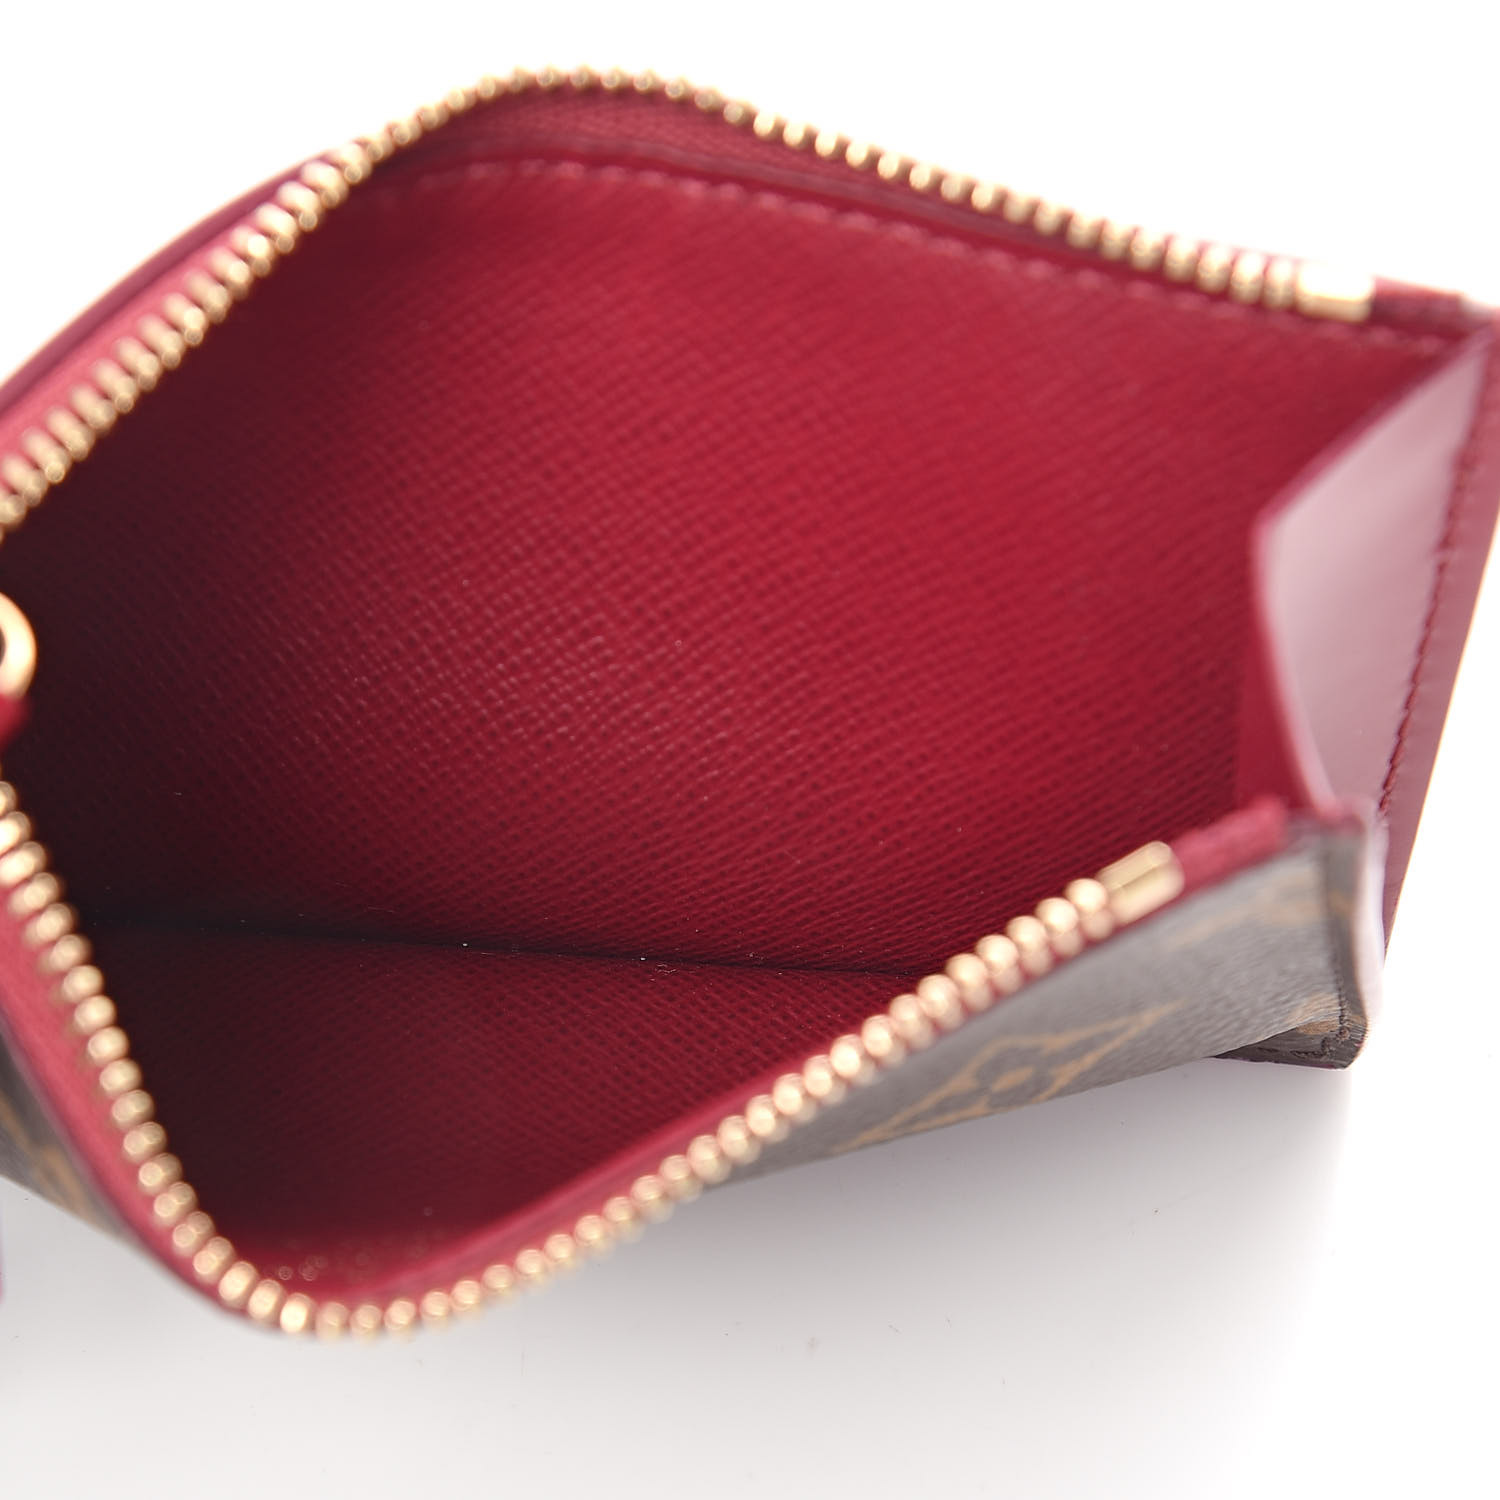 Louis Vuitton, Bags, Authentic Vintage Louis Vuitton Lv Brown Monogram Id Card  Holder Bifold Wallet